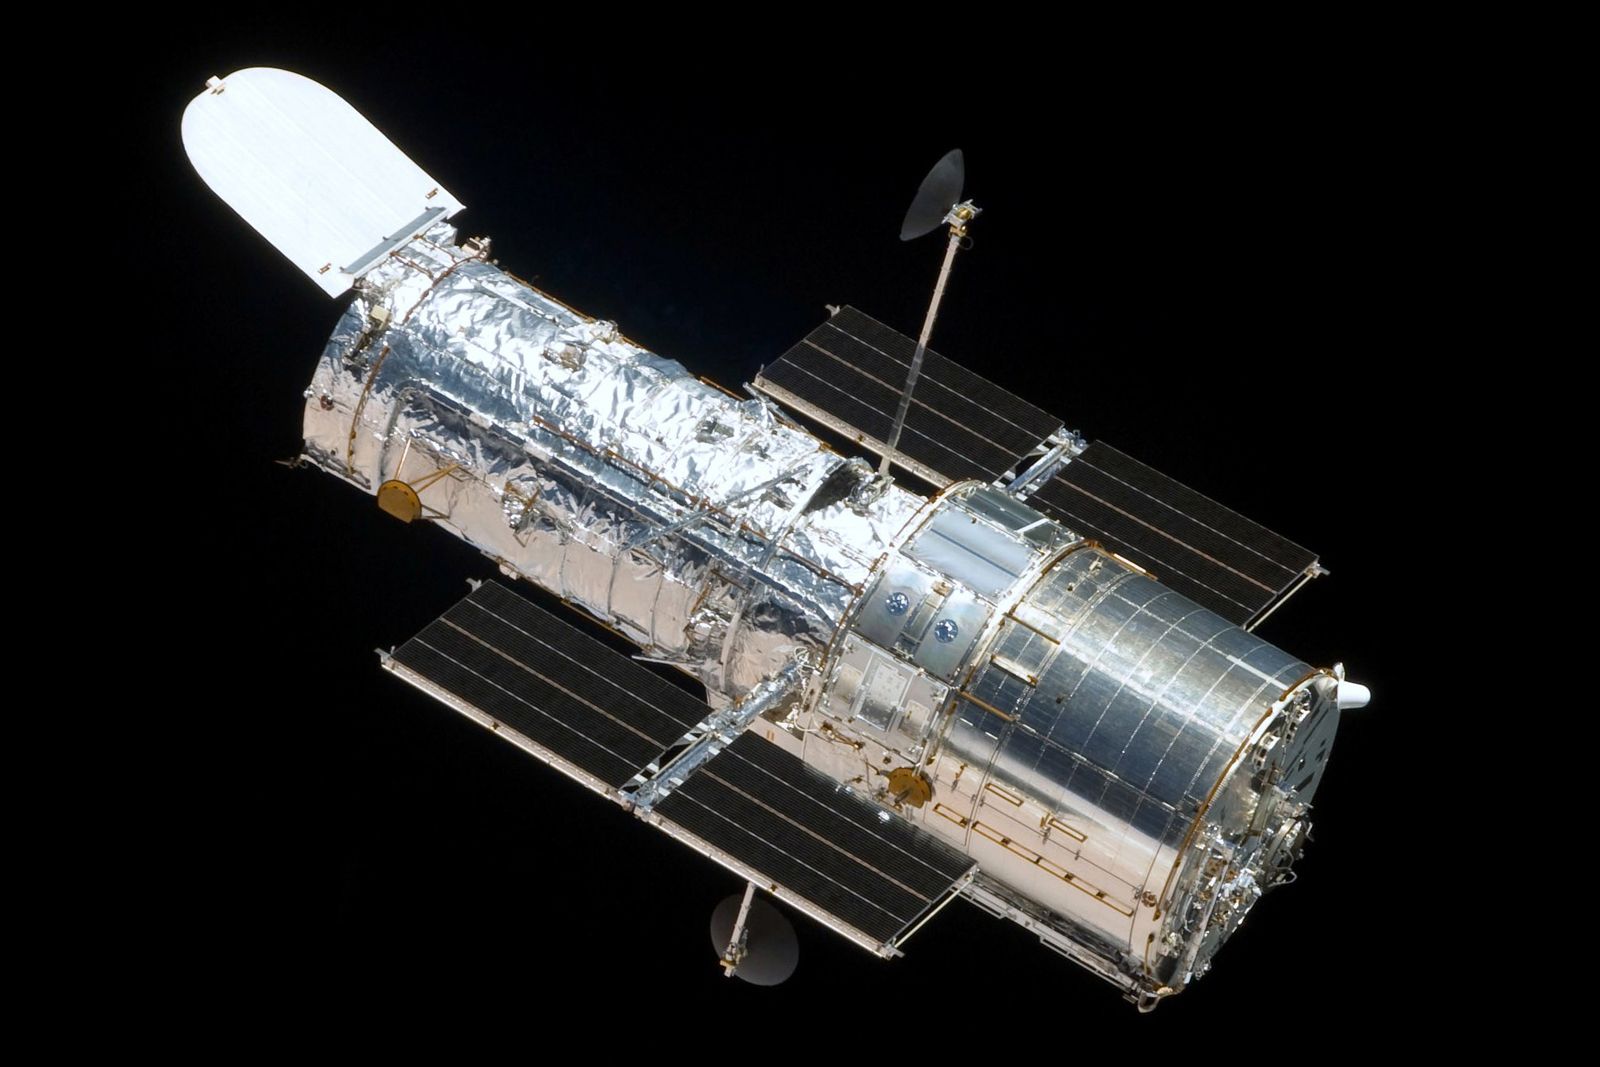 Best spacecraft image 7